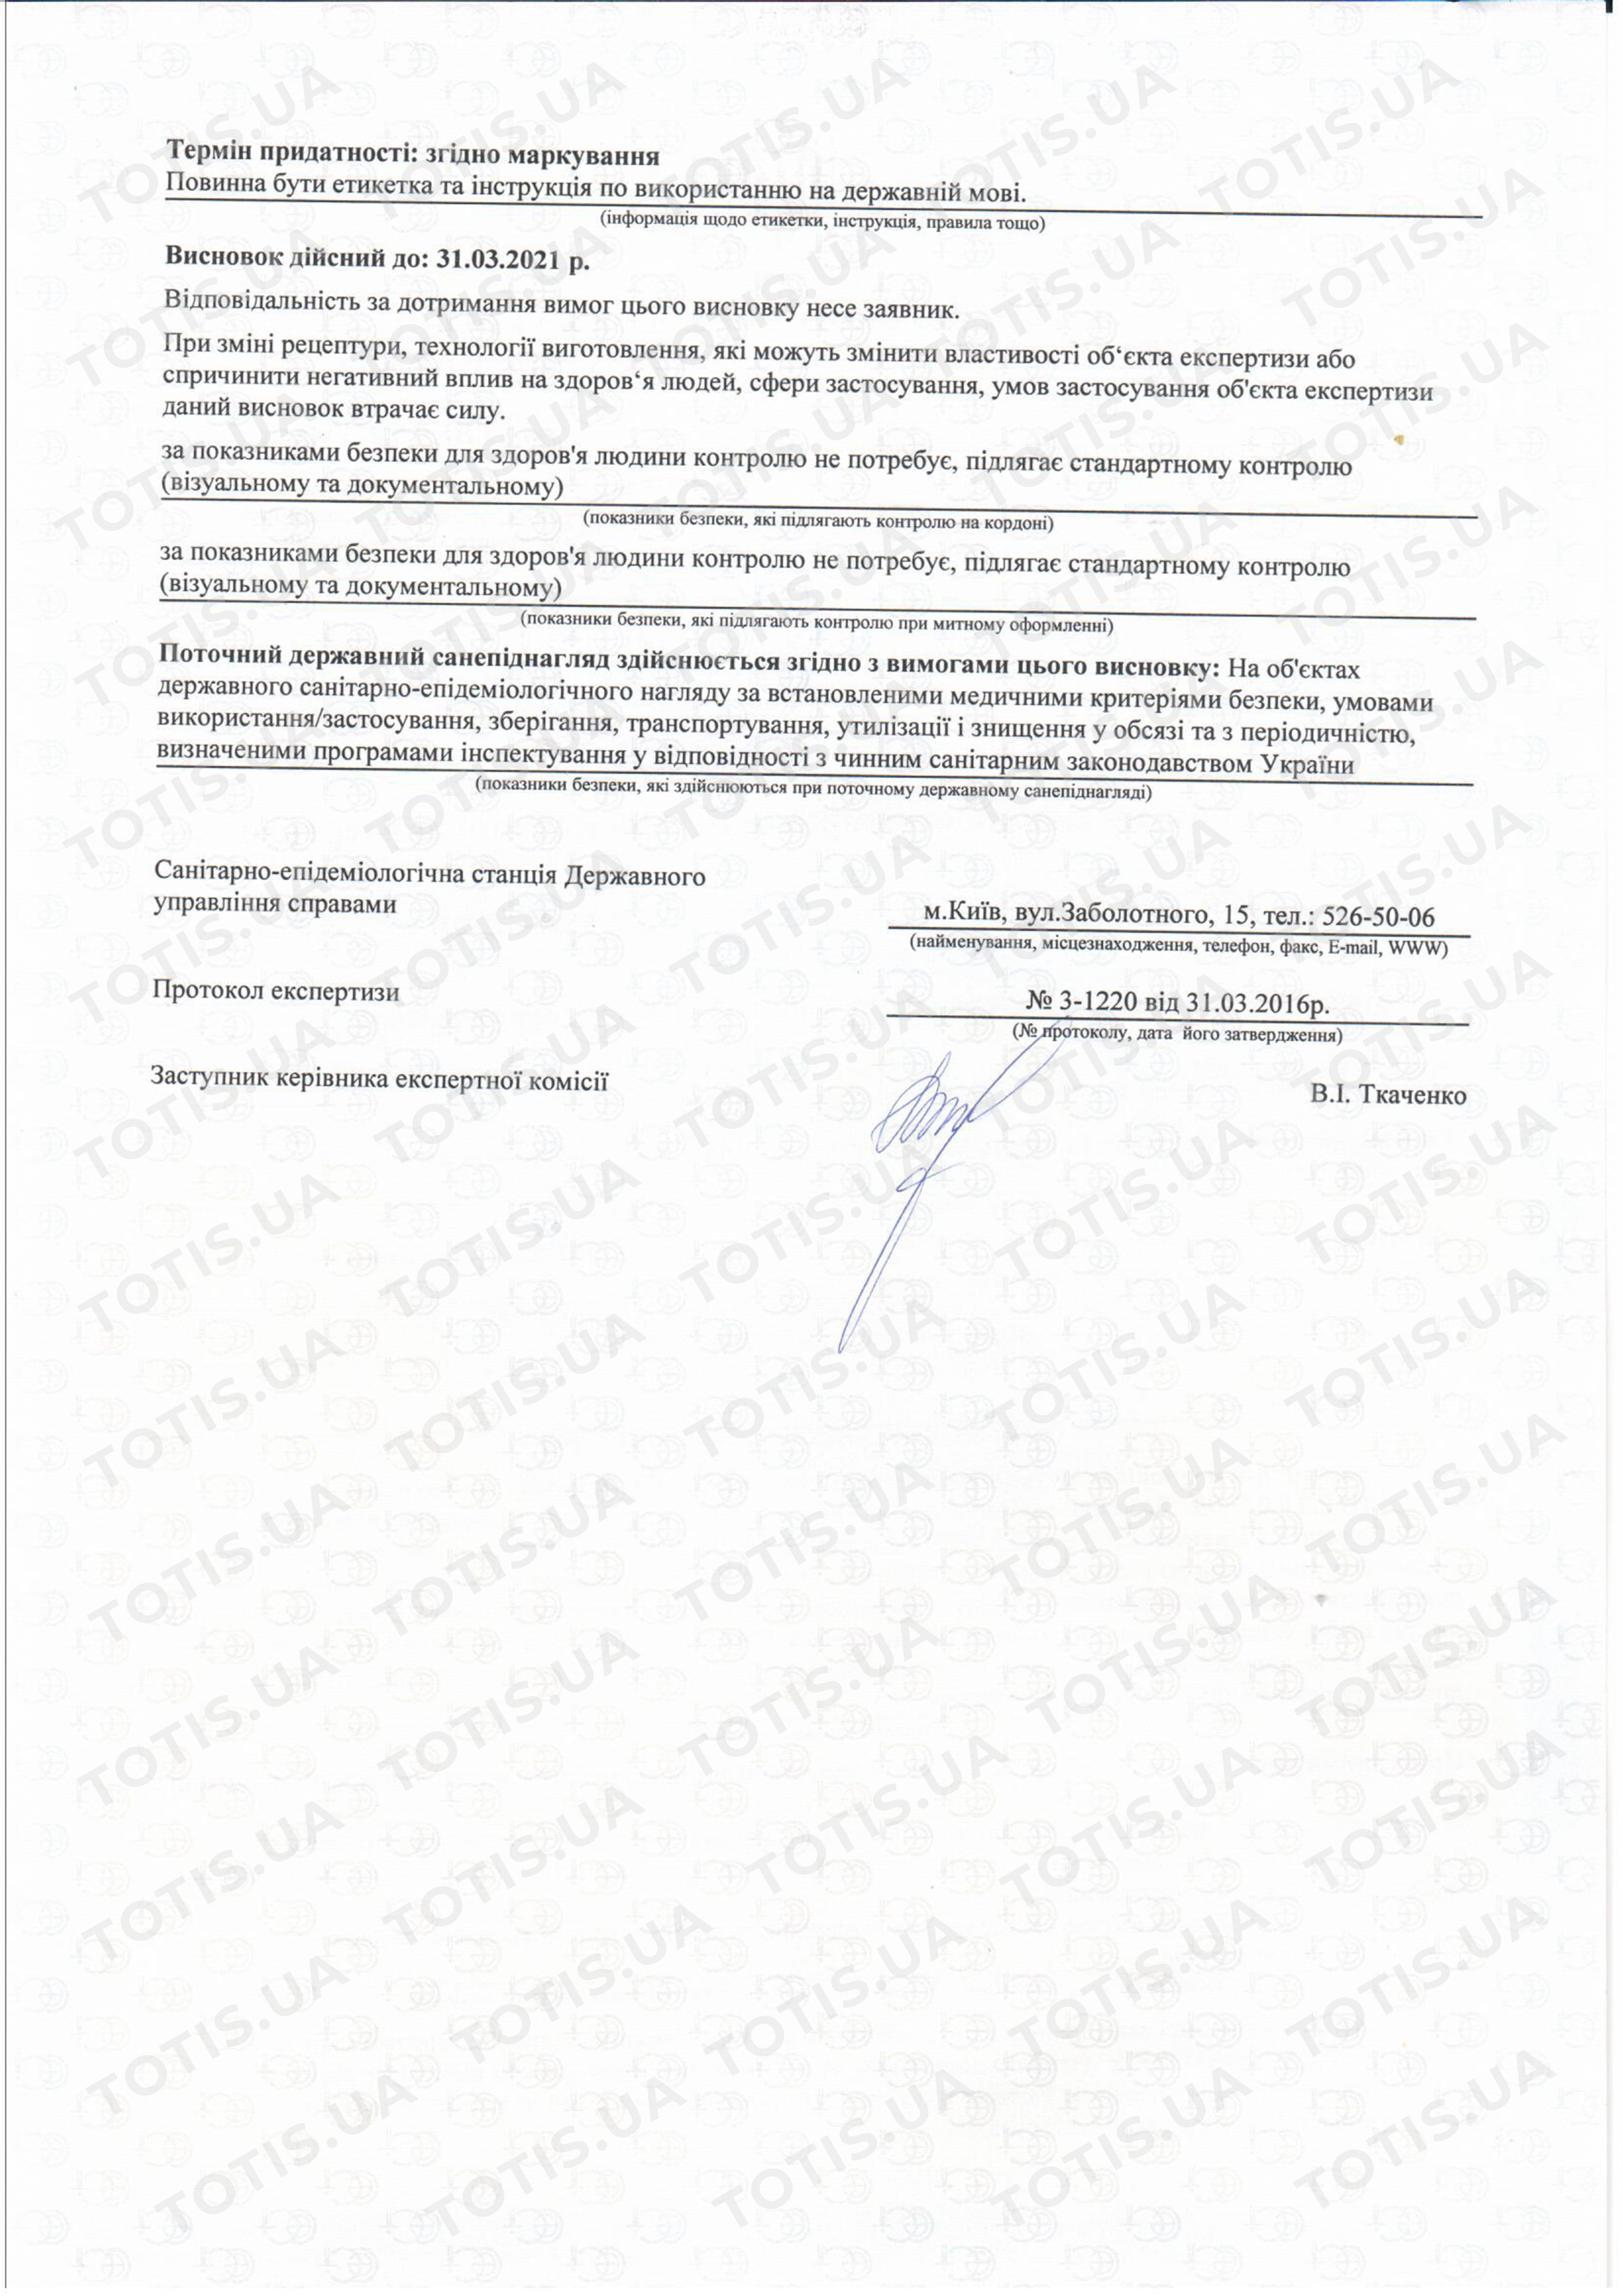 Сертификат препаратов Simildiet в Украине